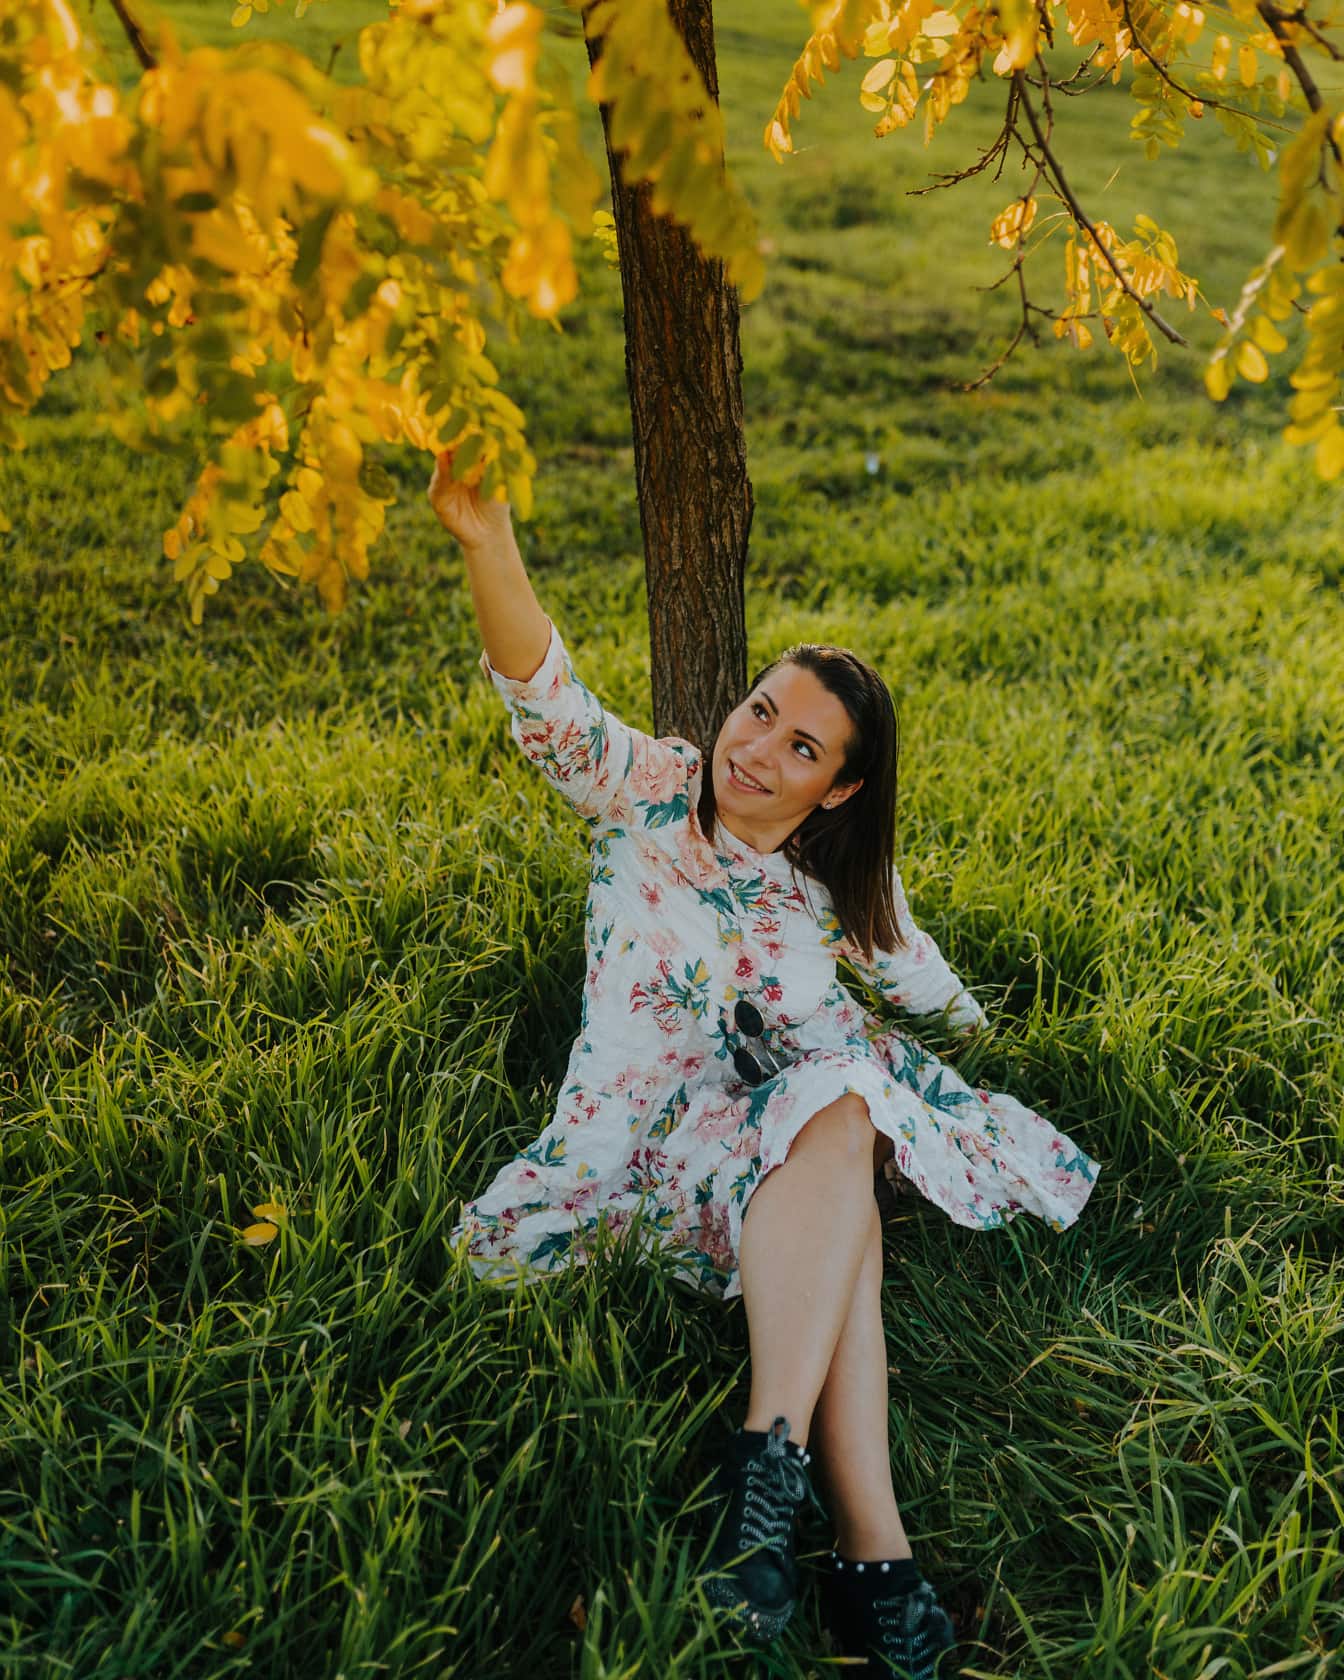 Linda mulher morena alegre sentada debaixo de uma árvore no prado gramado